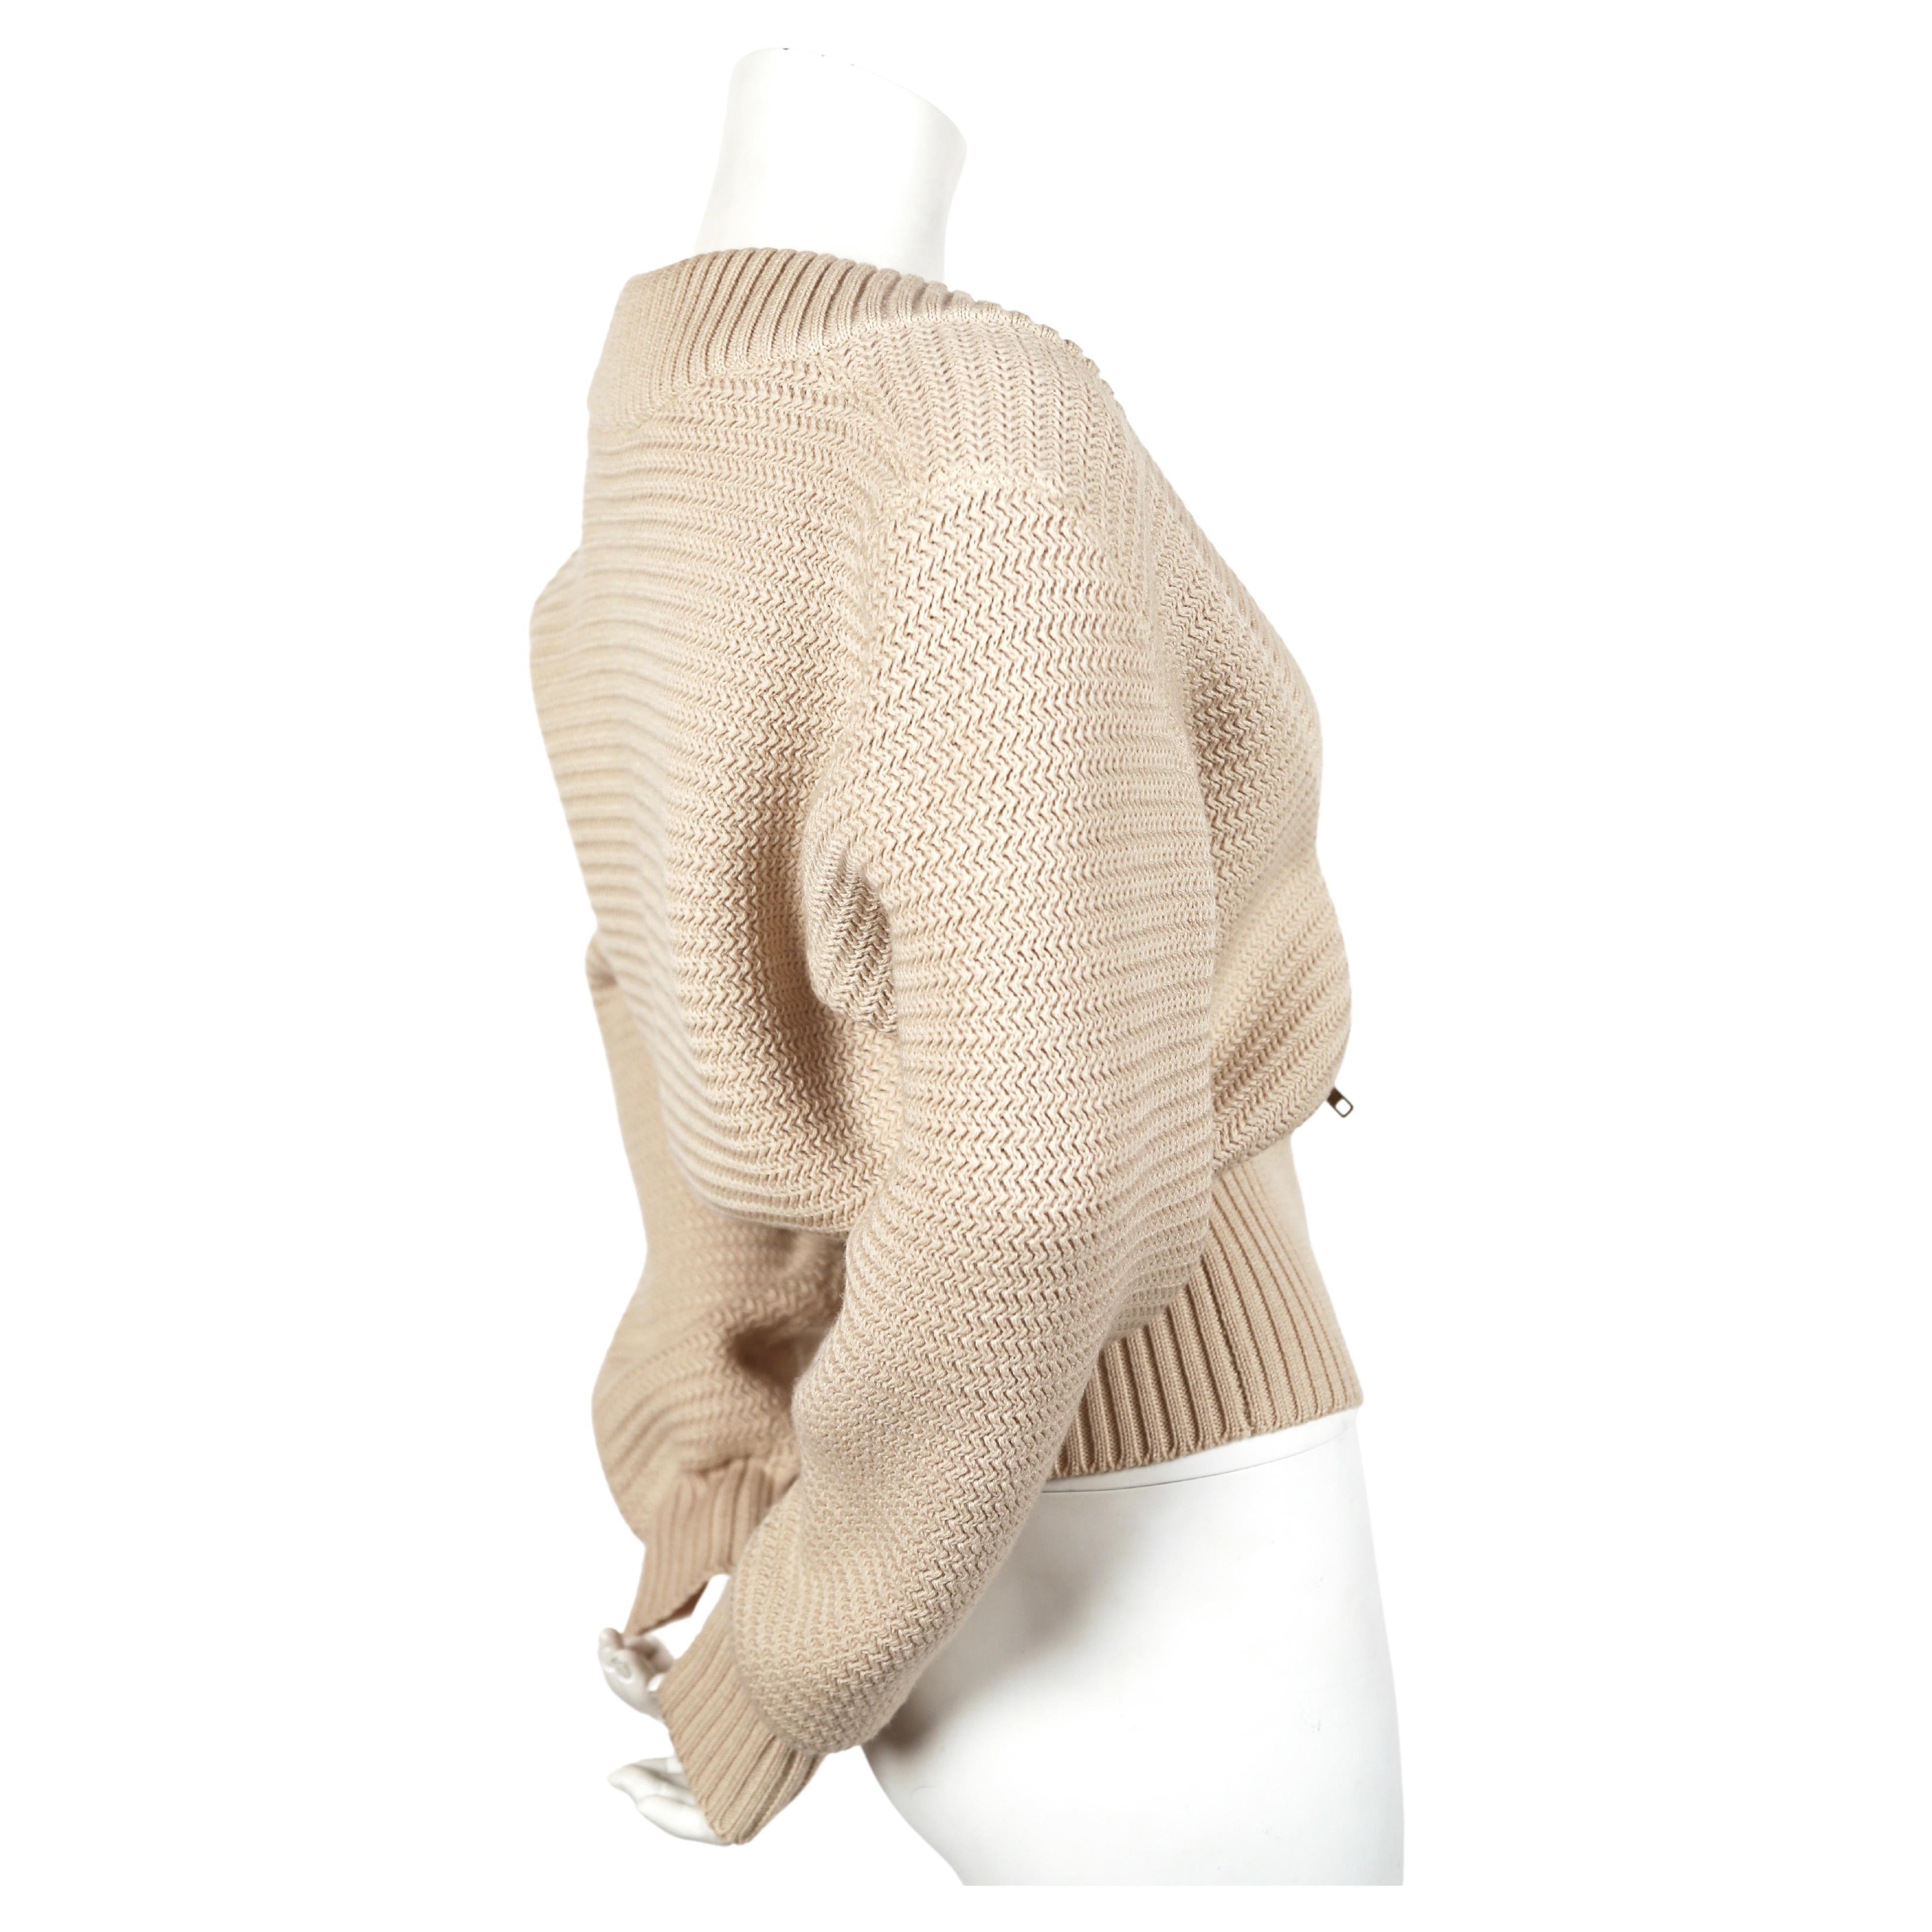 Veste cardigan en laine blanc cassé, densément tricotée, avec fermetures éclair en laiton et bordures côtelées, de Azzedine Alaia datant de l'automne 1986, telle qu'elle a été vue sur le défilé. Taille 'S'. Mesures approximatives : épaule tombante